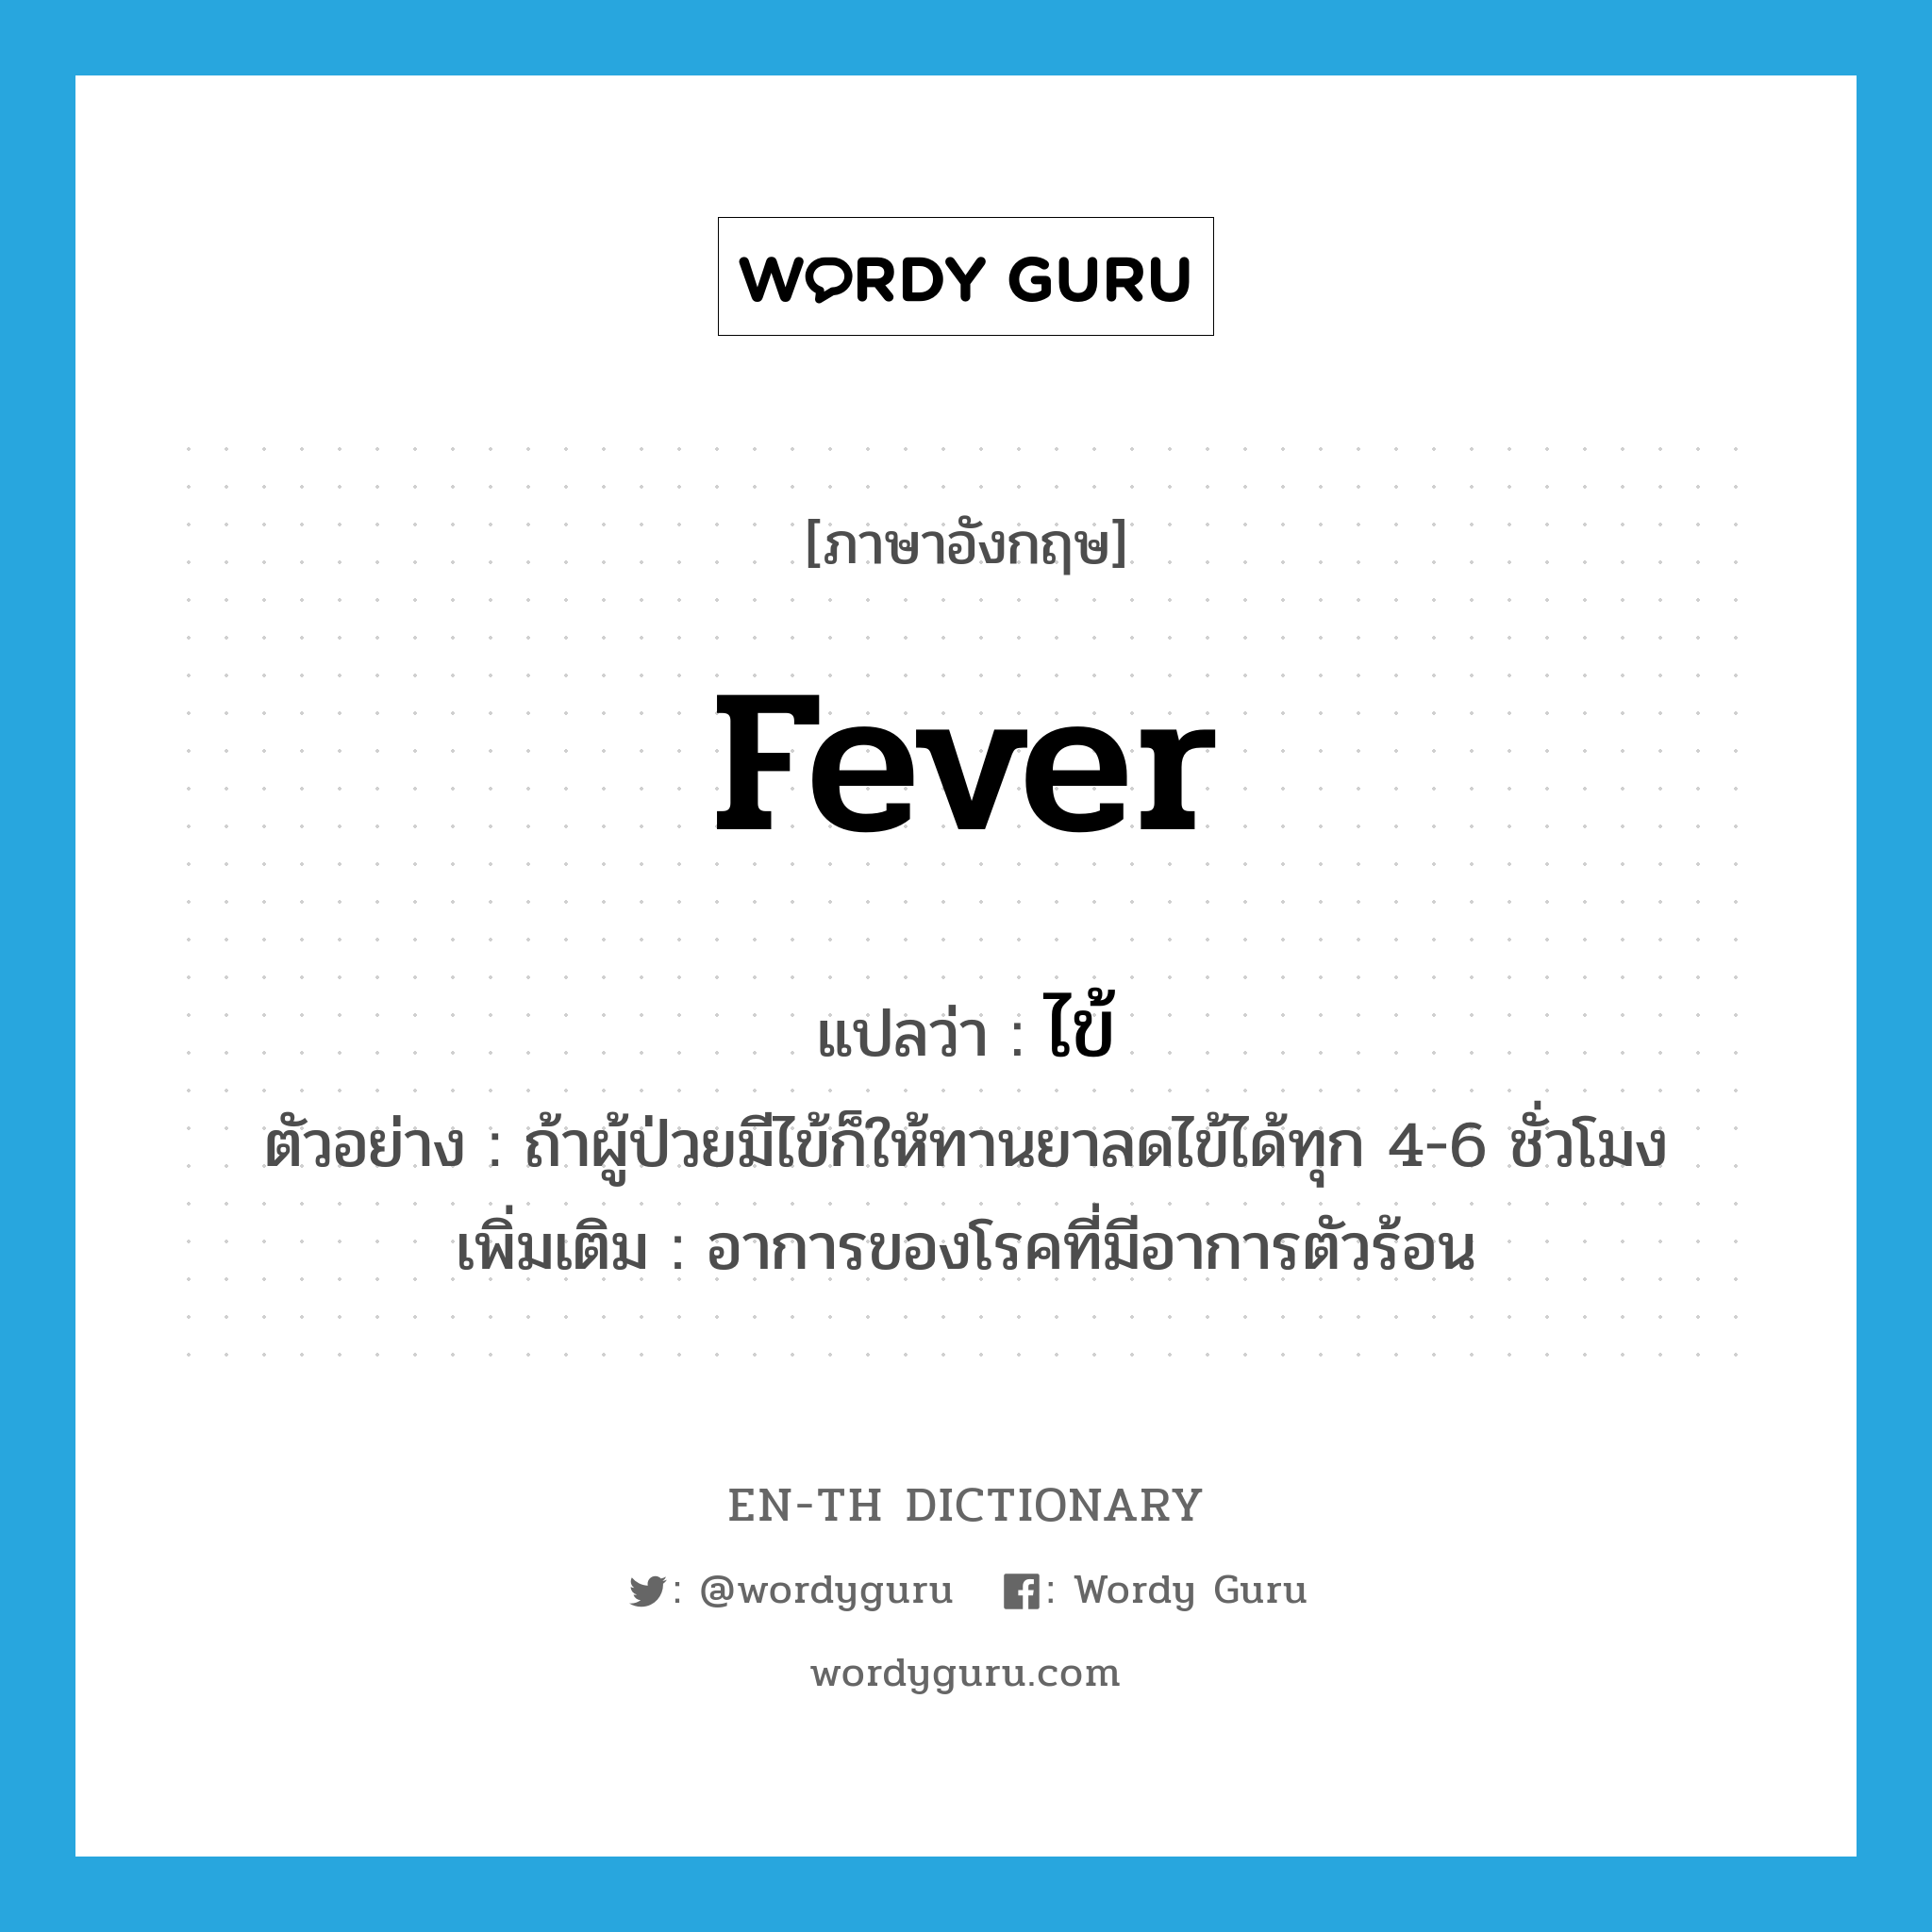 fever แปลว่า?, คำศัพท์ภาษาอังกฤษ fever แปลว่า ไข้ ประเภท N ตัวอย่าง ถ้าผู้ป่วยมีไข้ก็ให้ทานยาลดไข้ได้ทุก 4-6 ชั่วโมง เพิ่มเติม อาการของโรคที่มีอาการตัวร้อน หมวด N